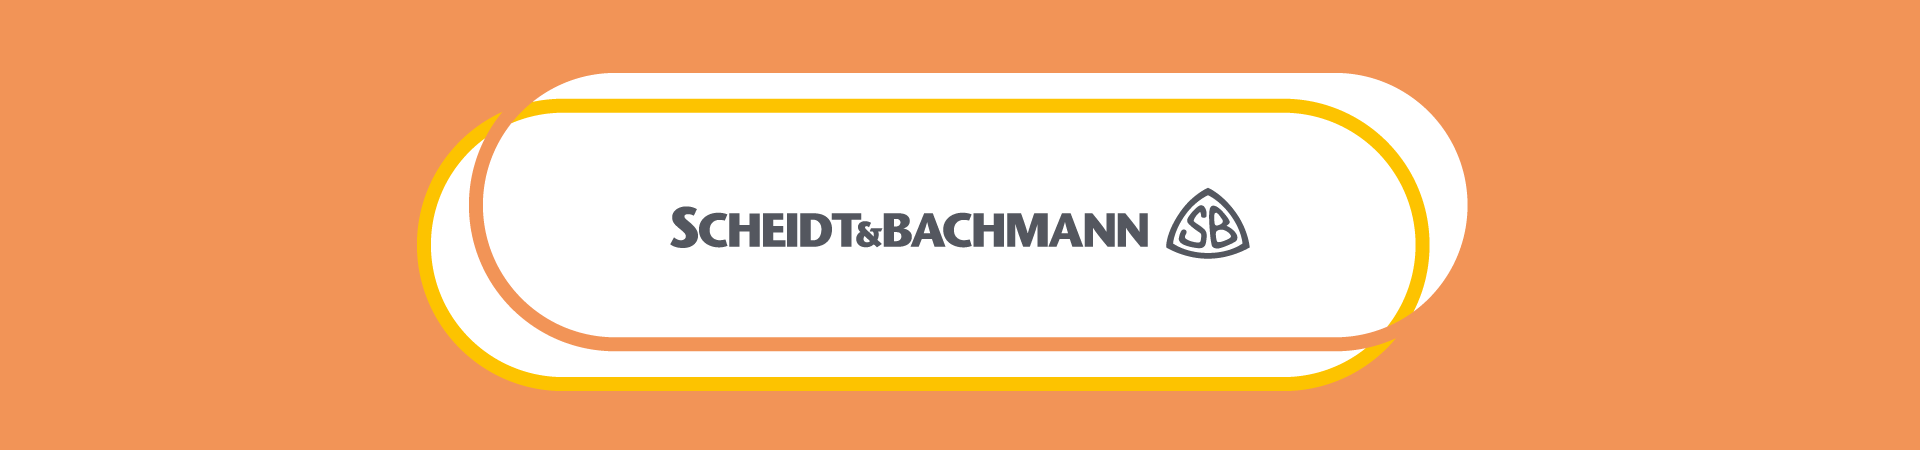 Scheidt & Bachmann uses parkoneer for digital parking management